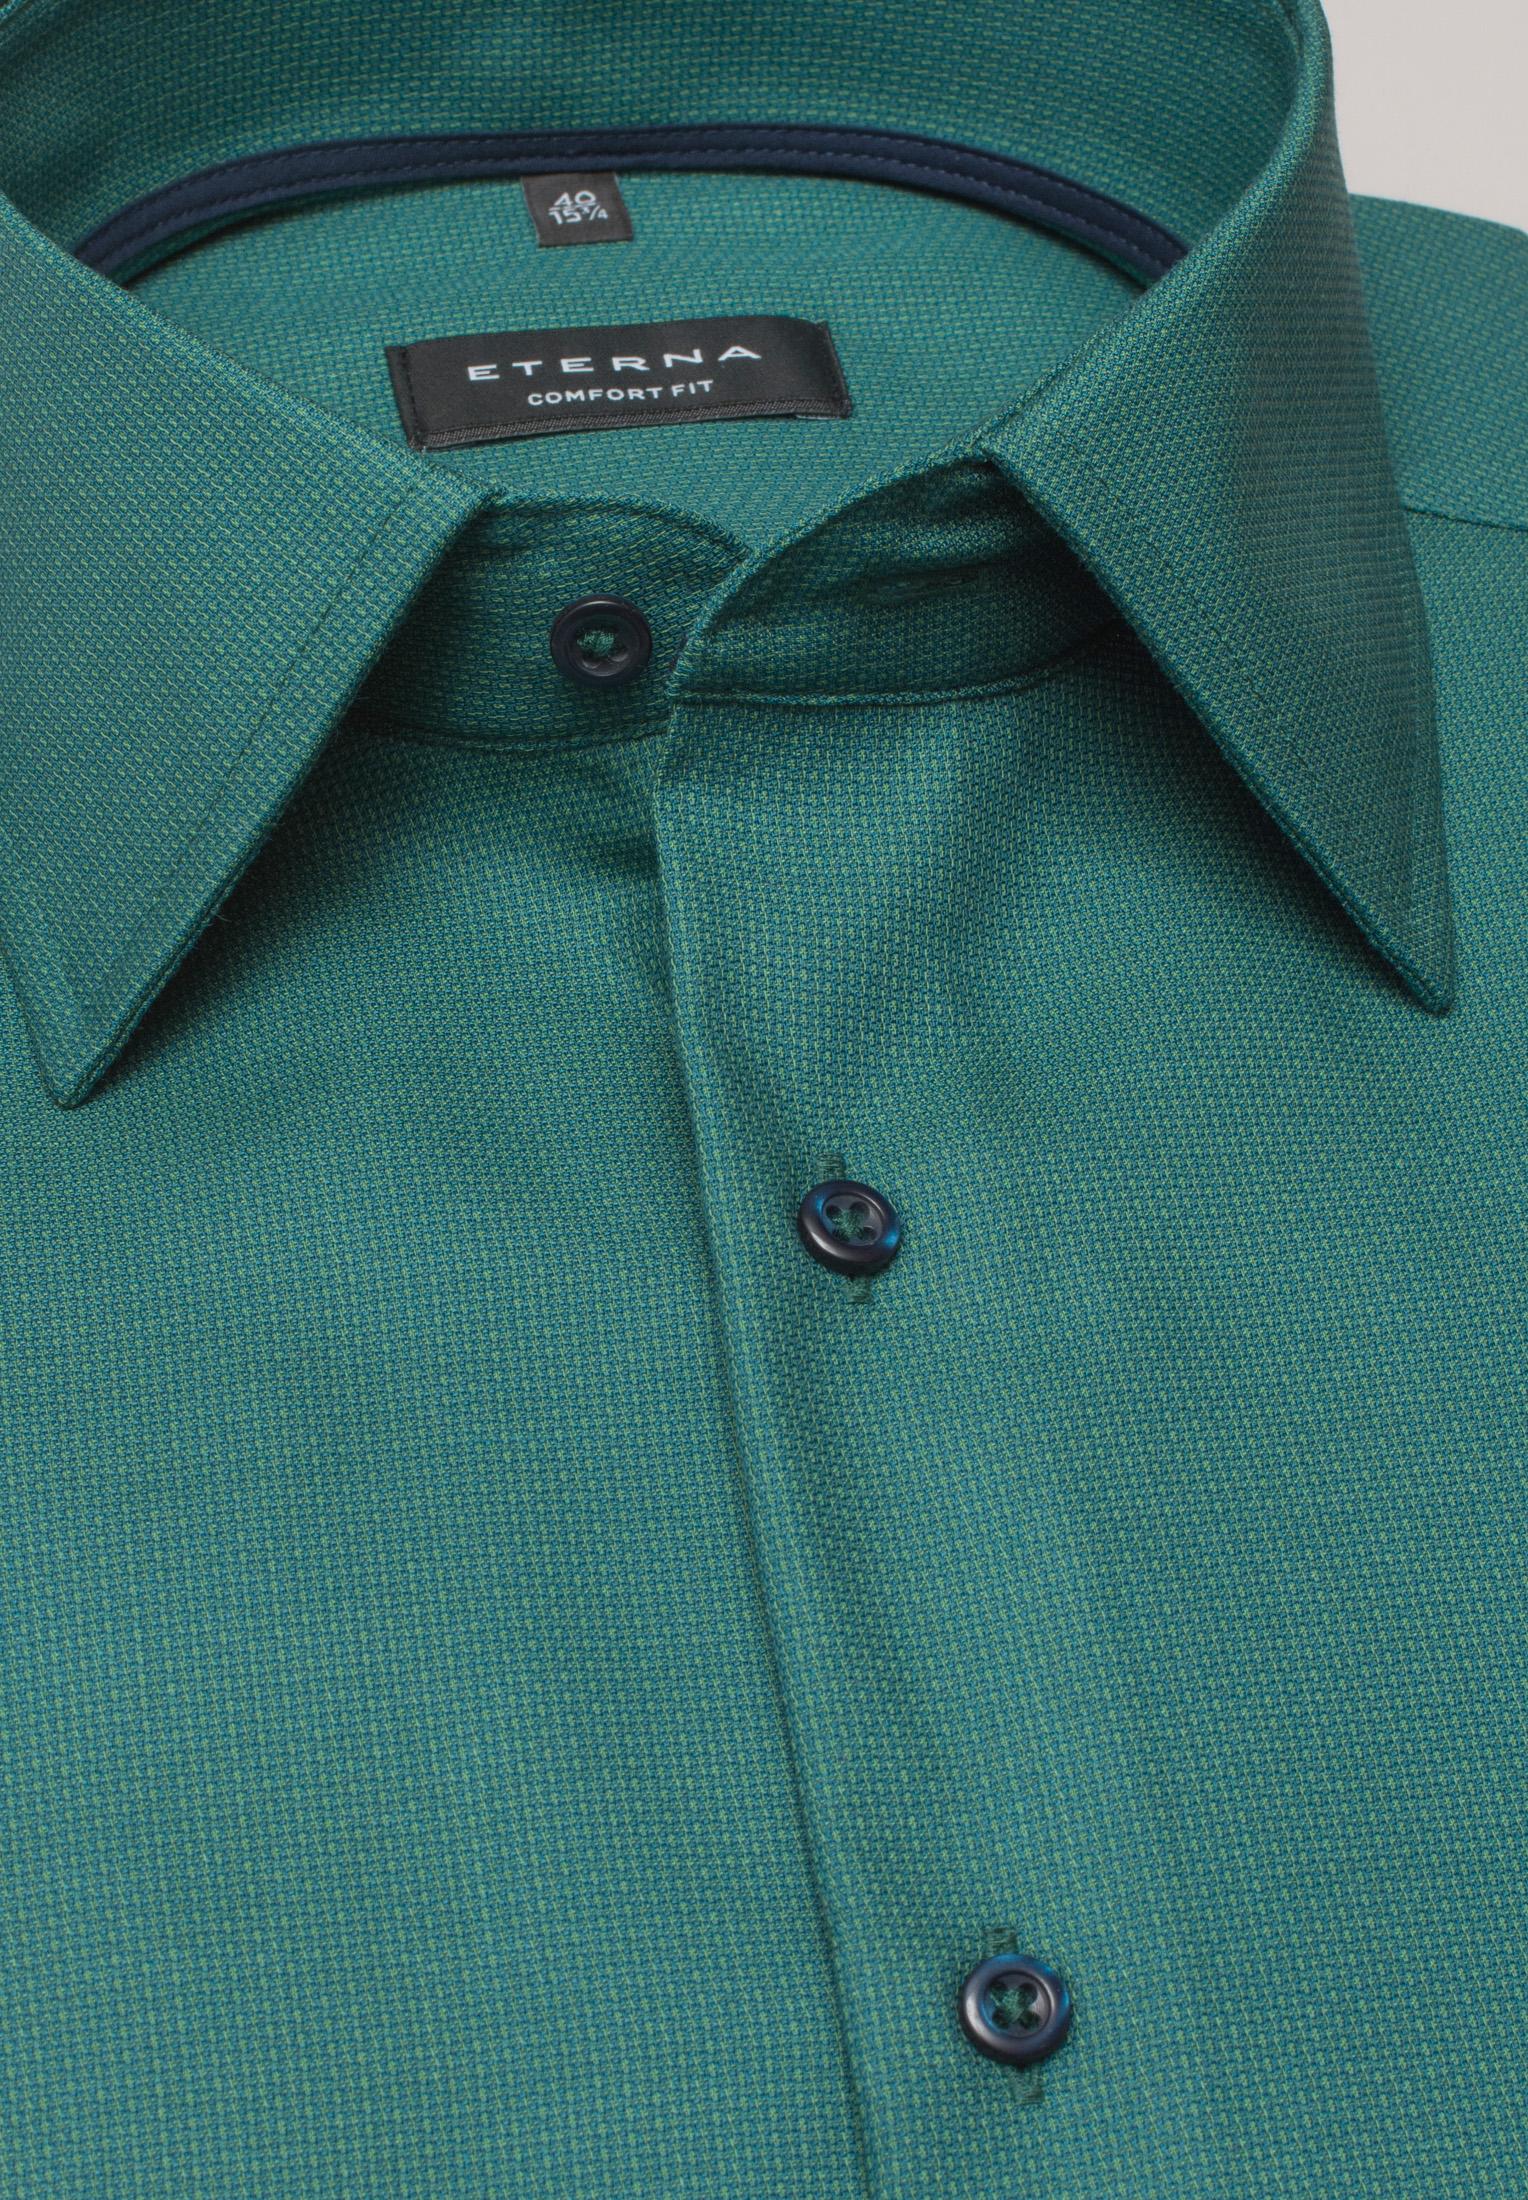 Мужская рубашка ETERNA, зеленая, цвет зеленый, размер 46 - фото 4